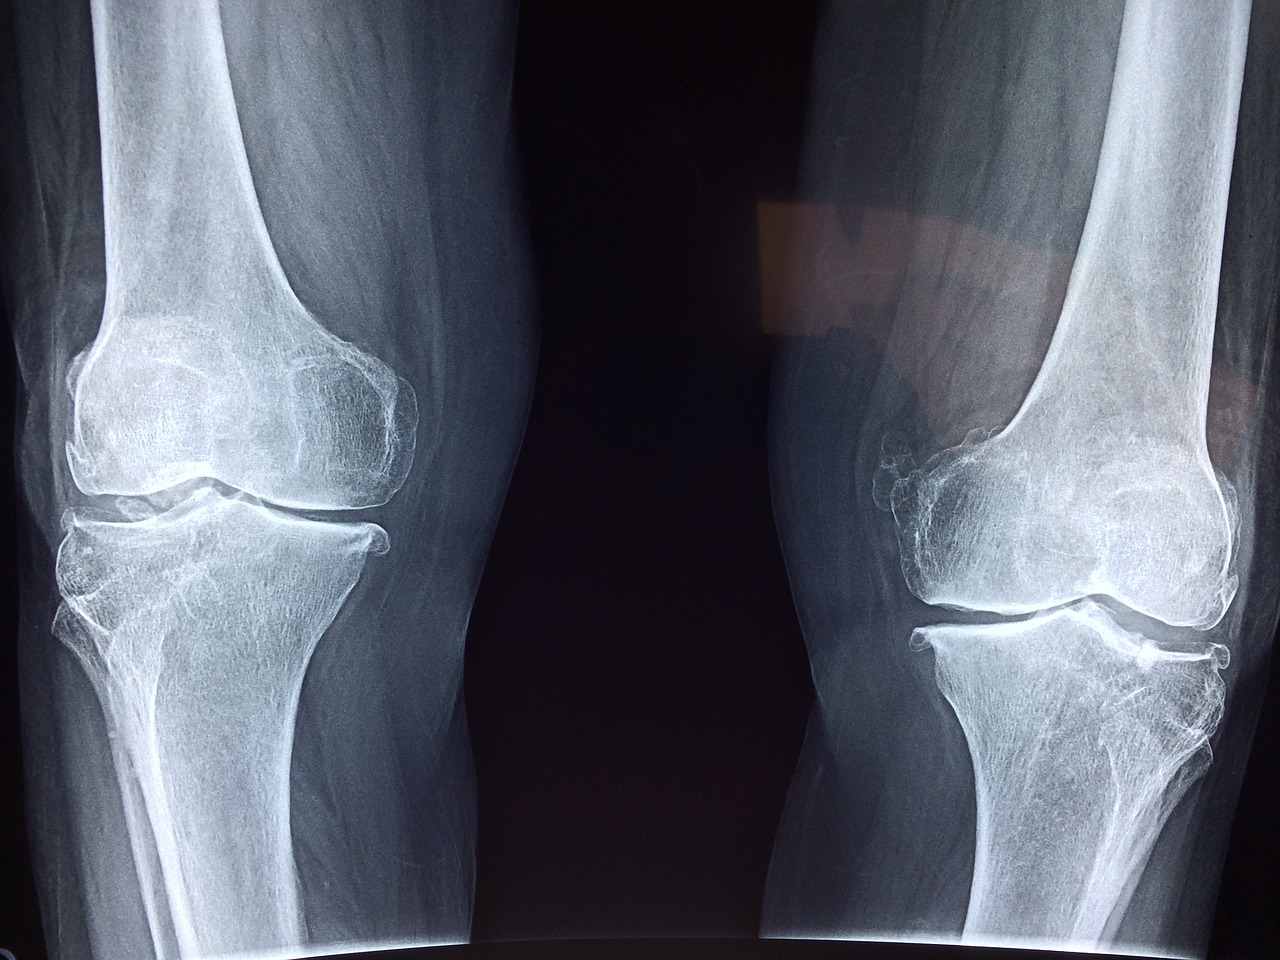 knee x ray